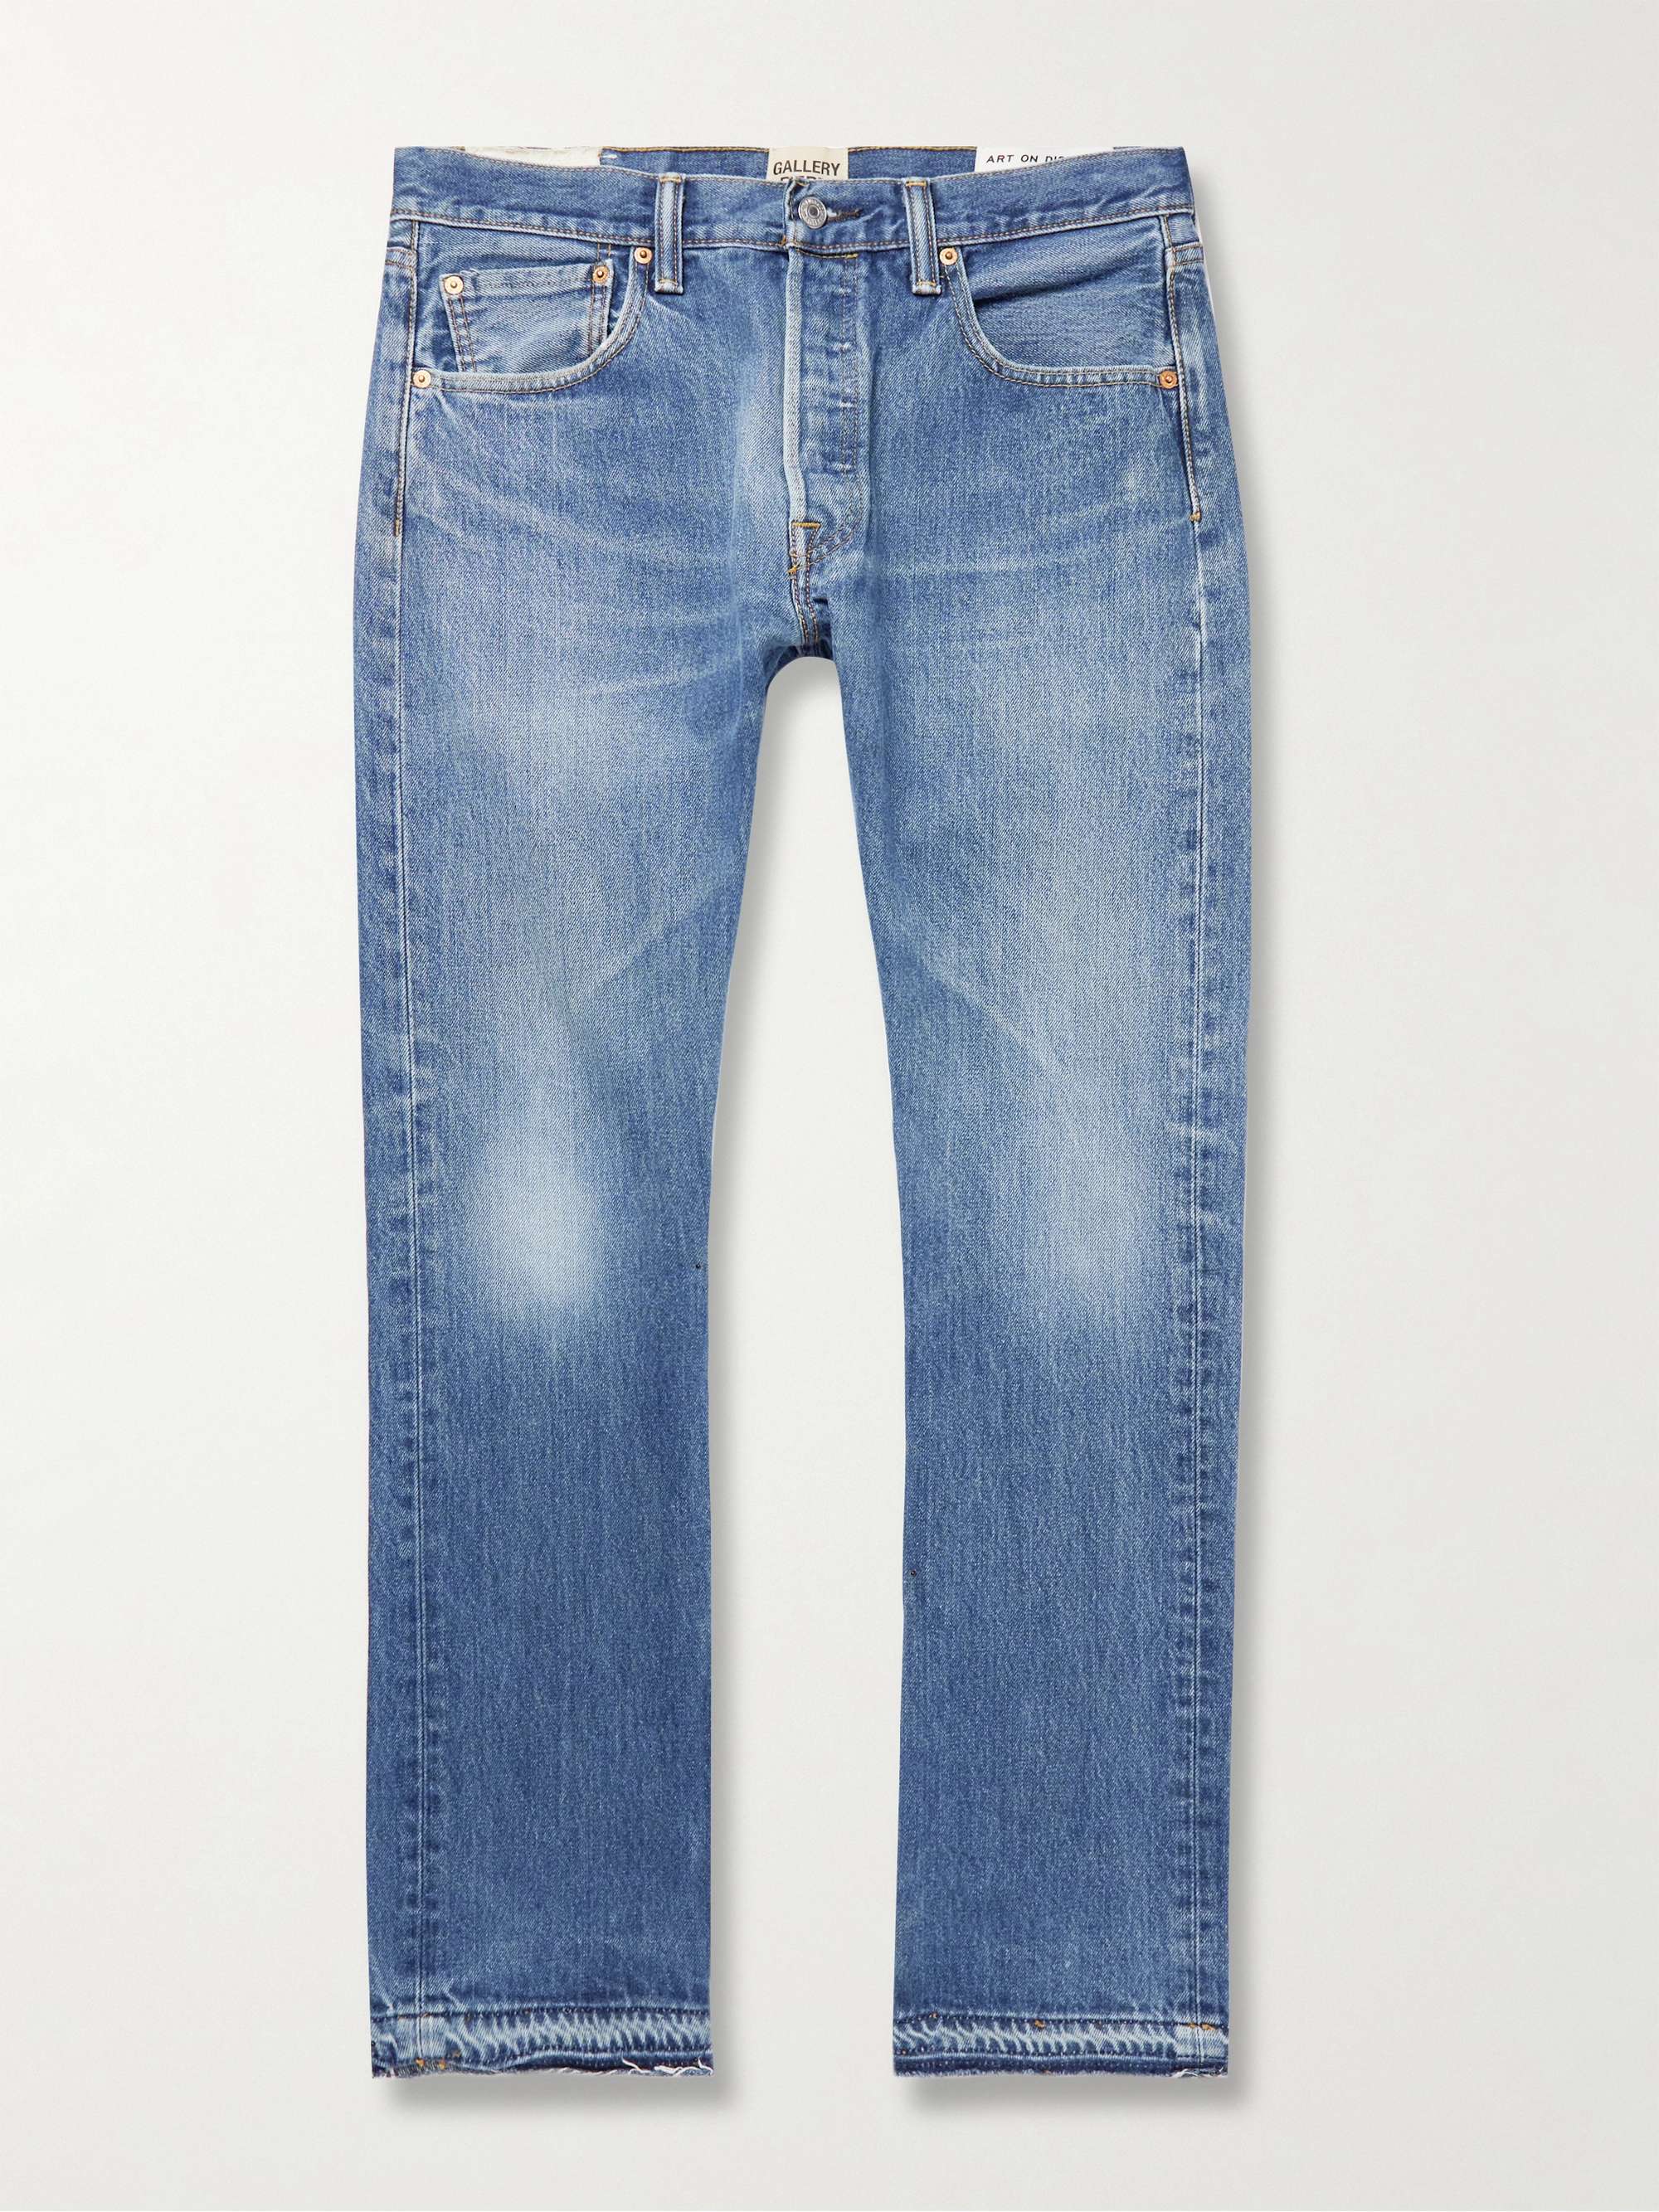 GALLERY DEPT. 5001 Distressed Jeans for Men | MR PORTER